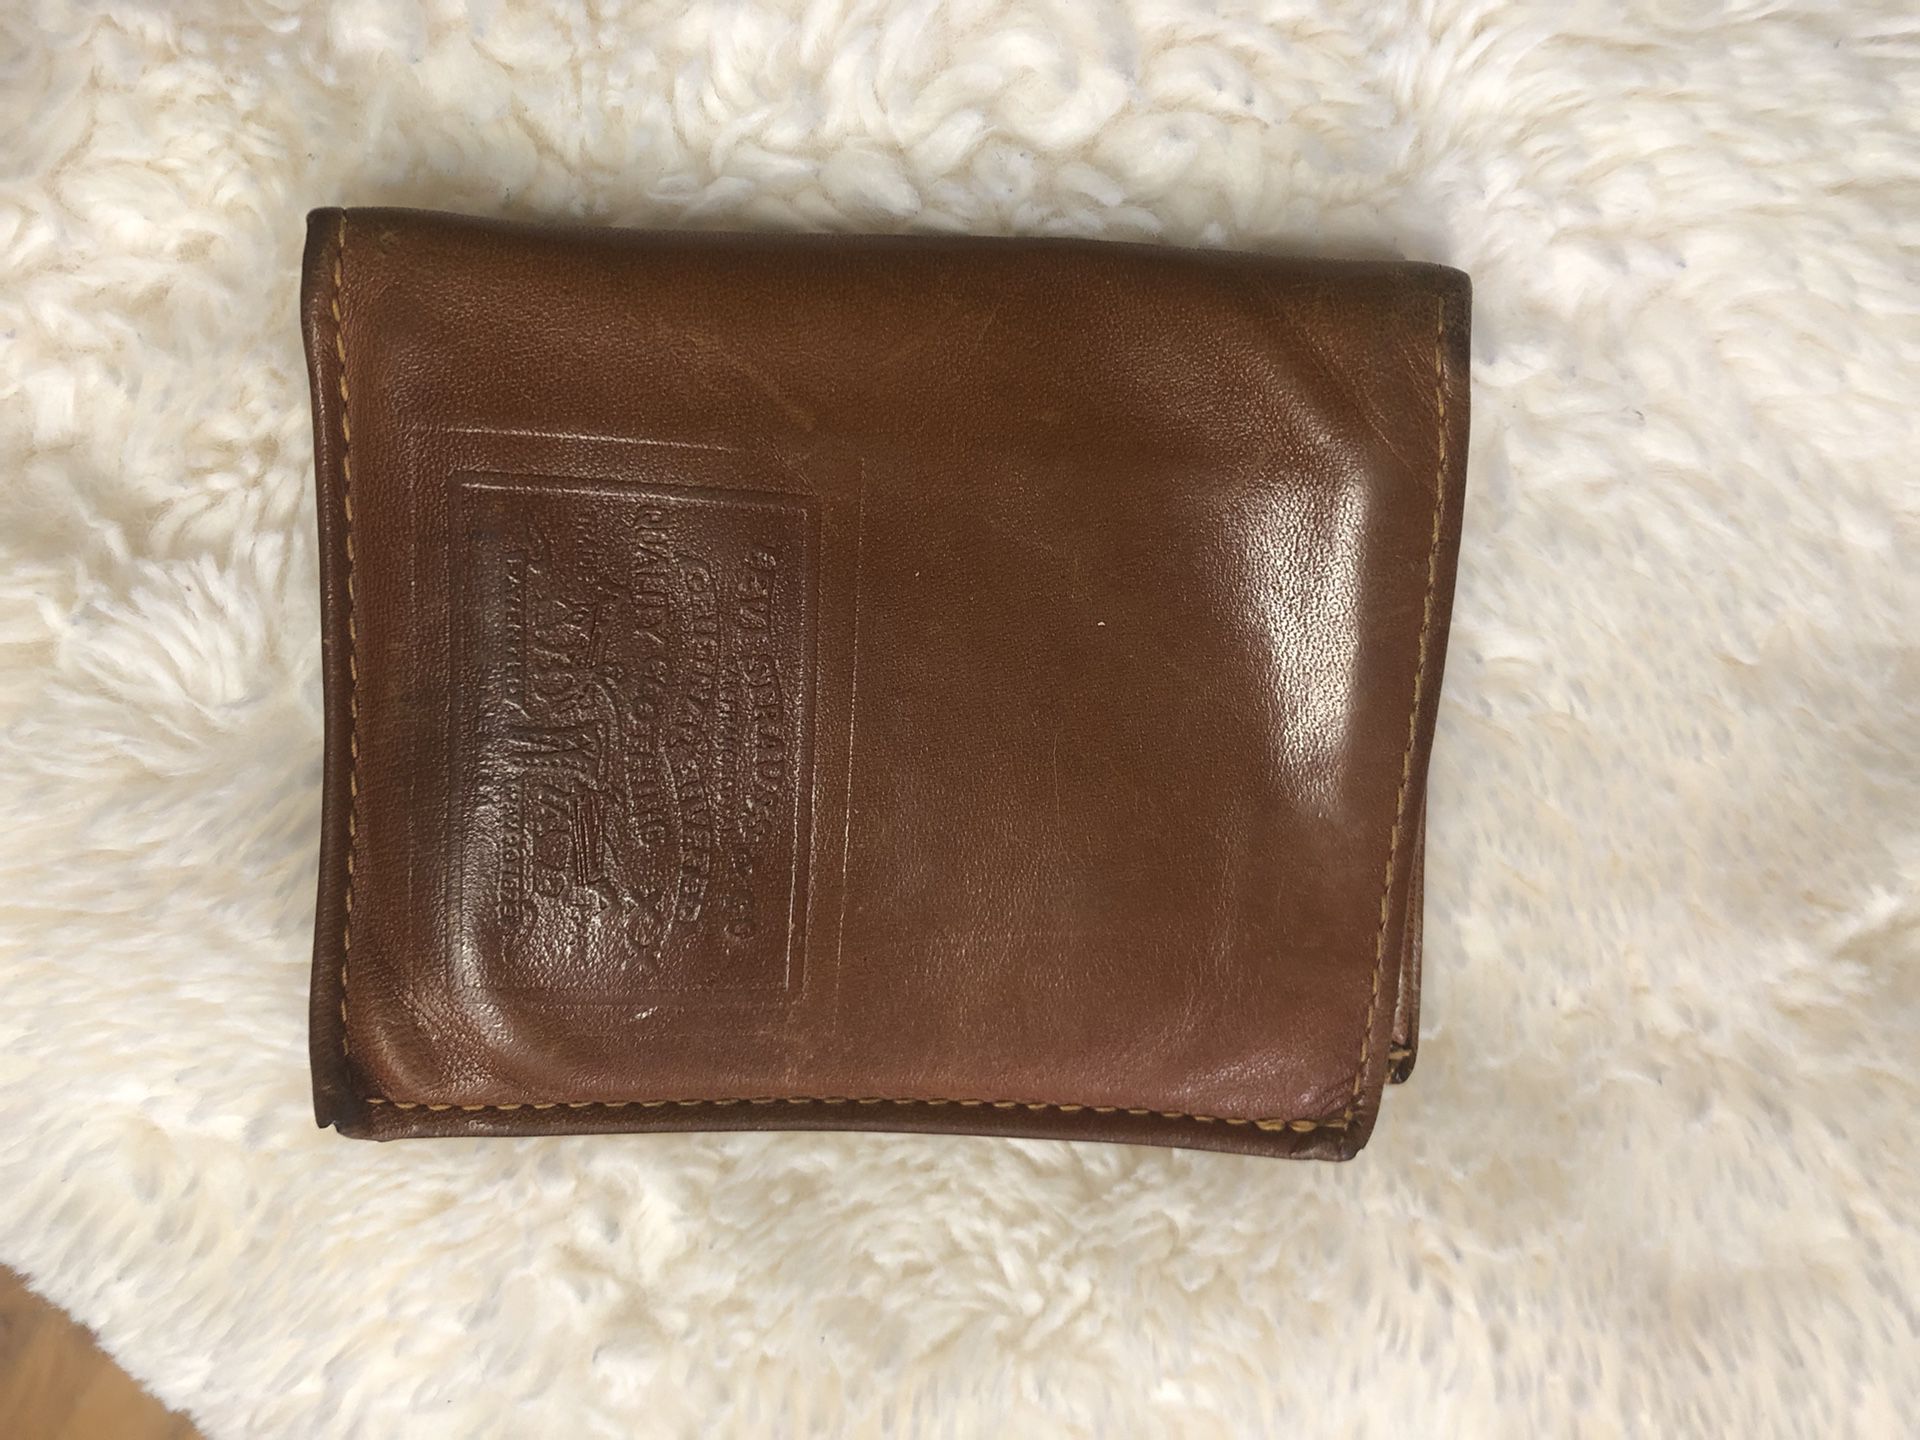 Vtg. LEVI’S Embossed Leather Bi-Fold Wallet with Denim &  LEVI’S Orange Tag Inside!